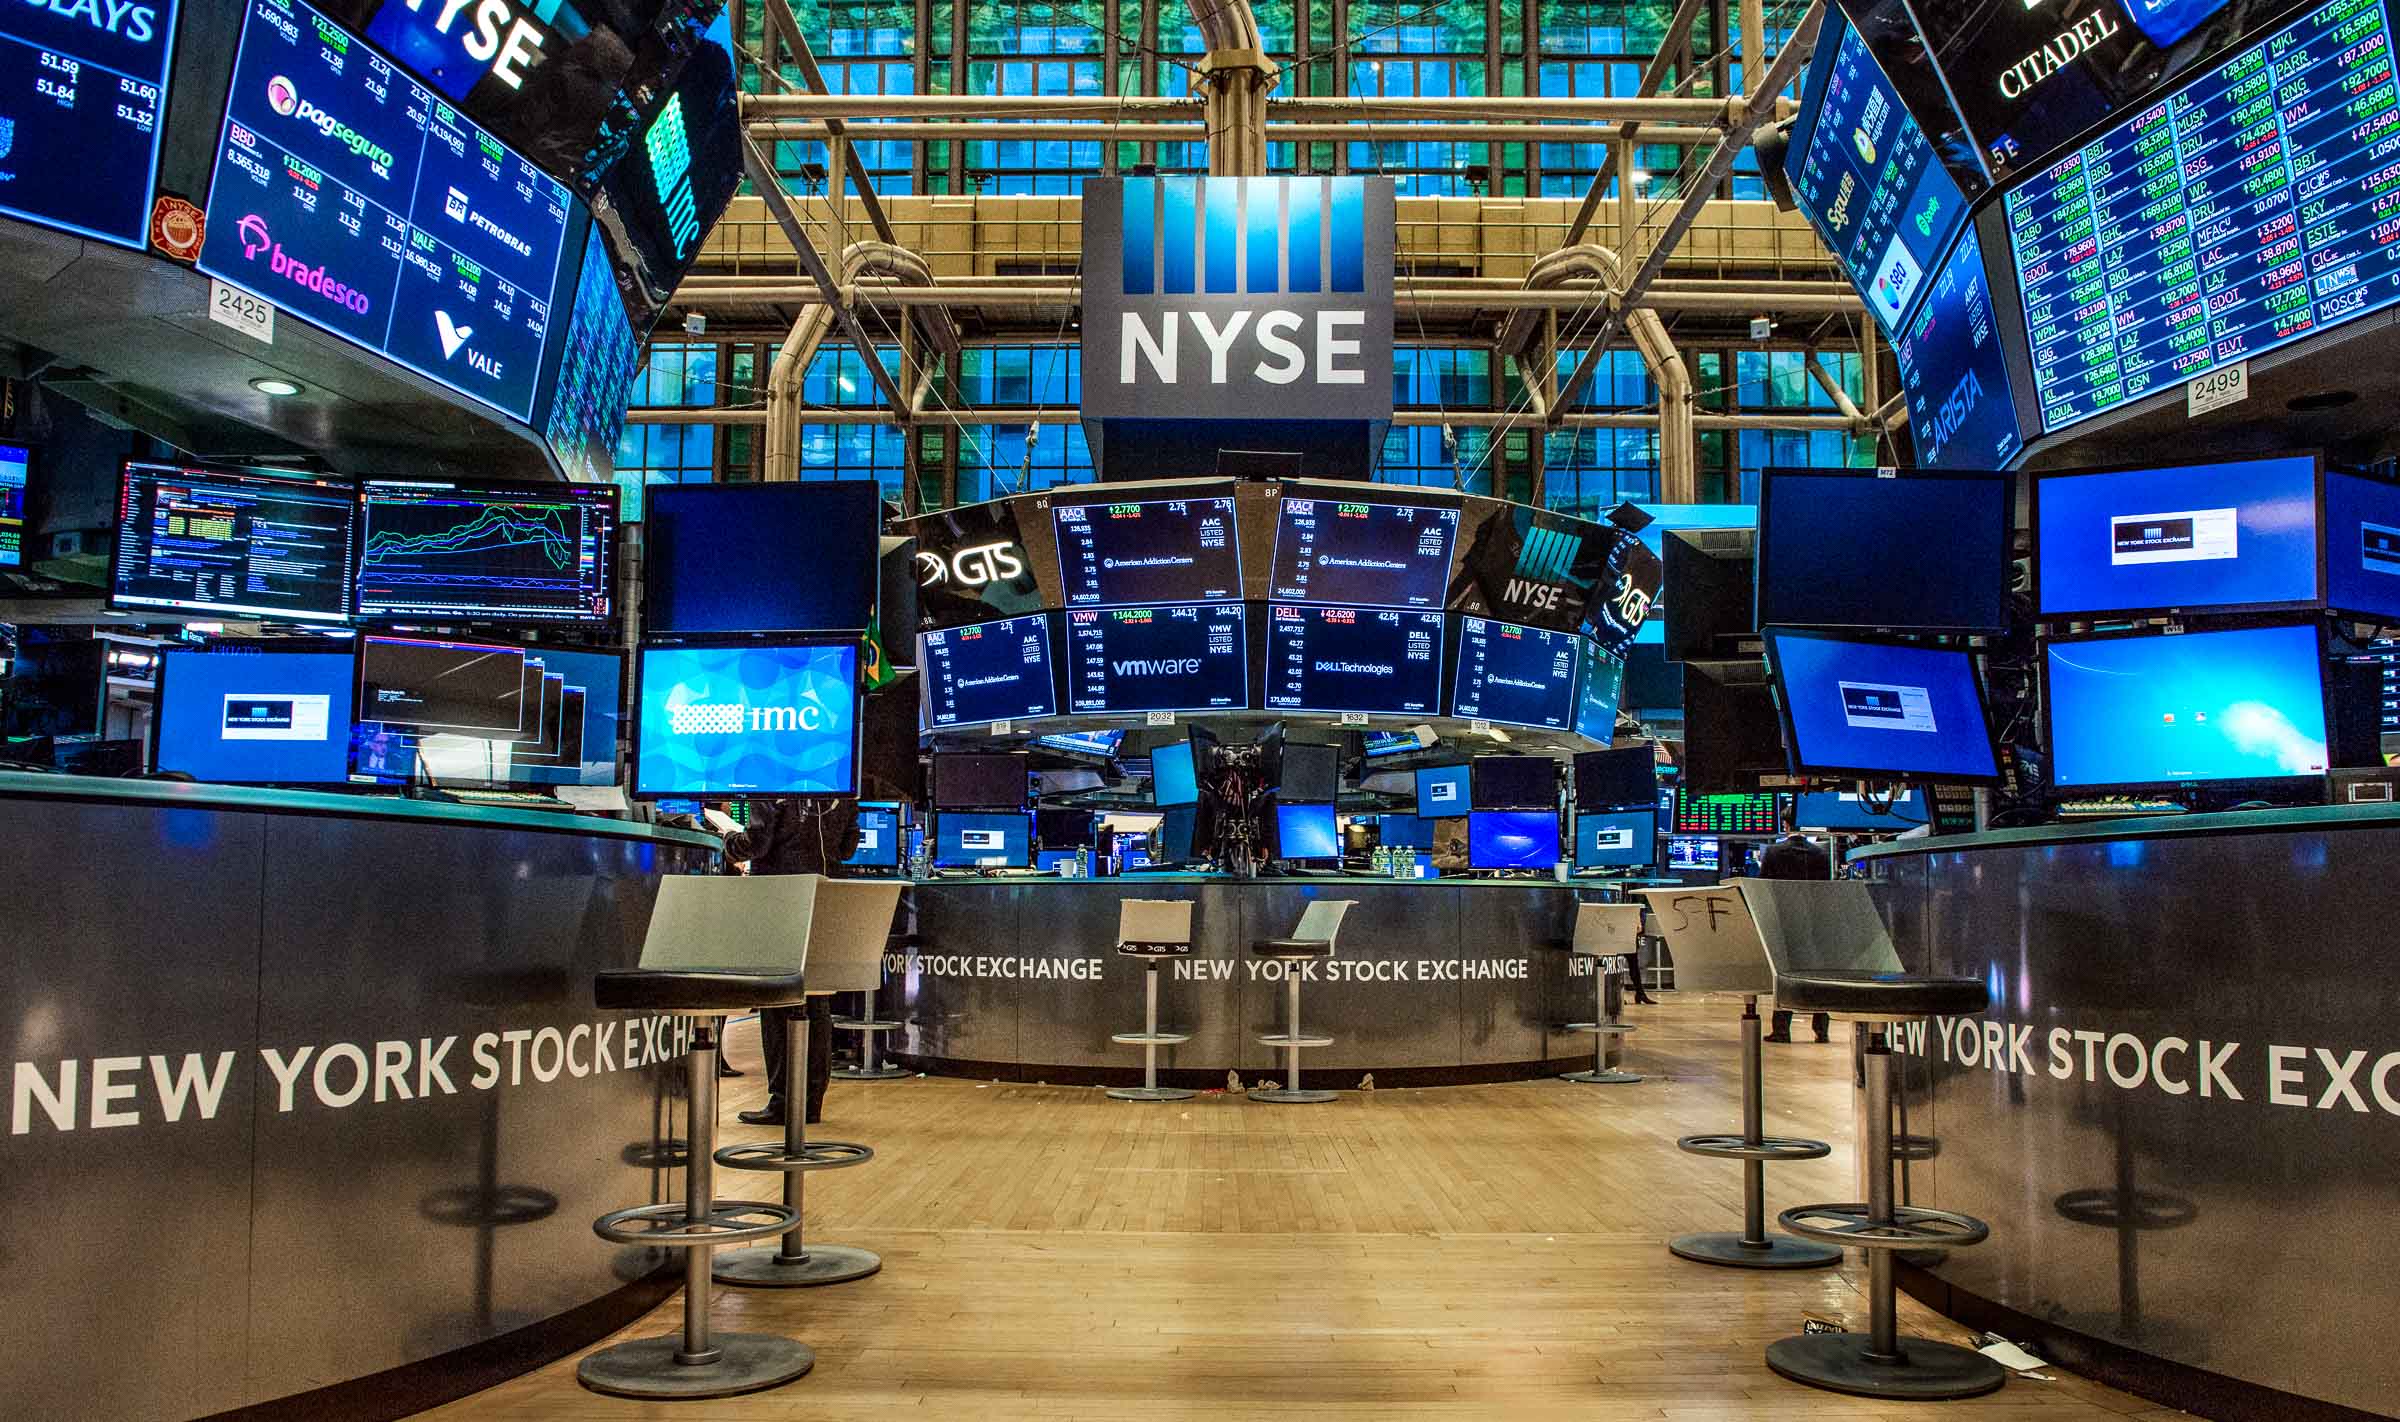 NYSE / New York Stock Exchange